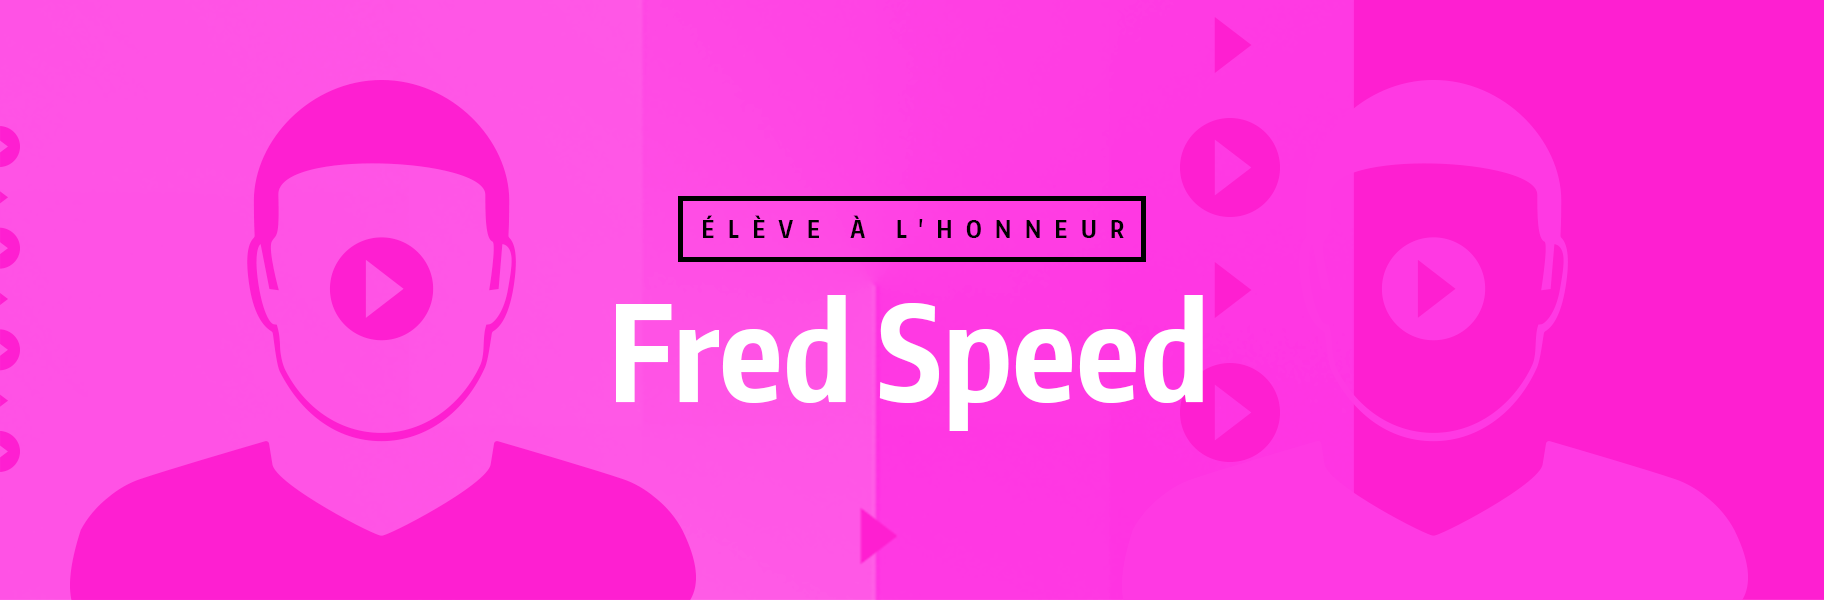 Élève à l'honneur - Fred Speed